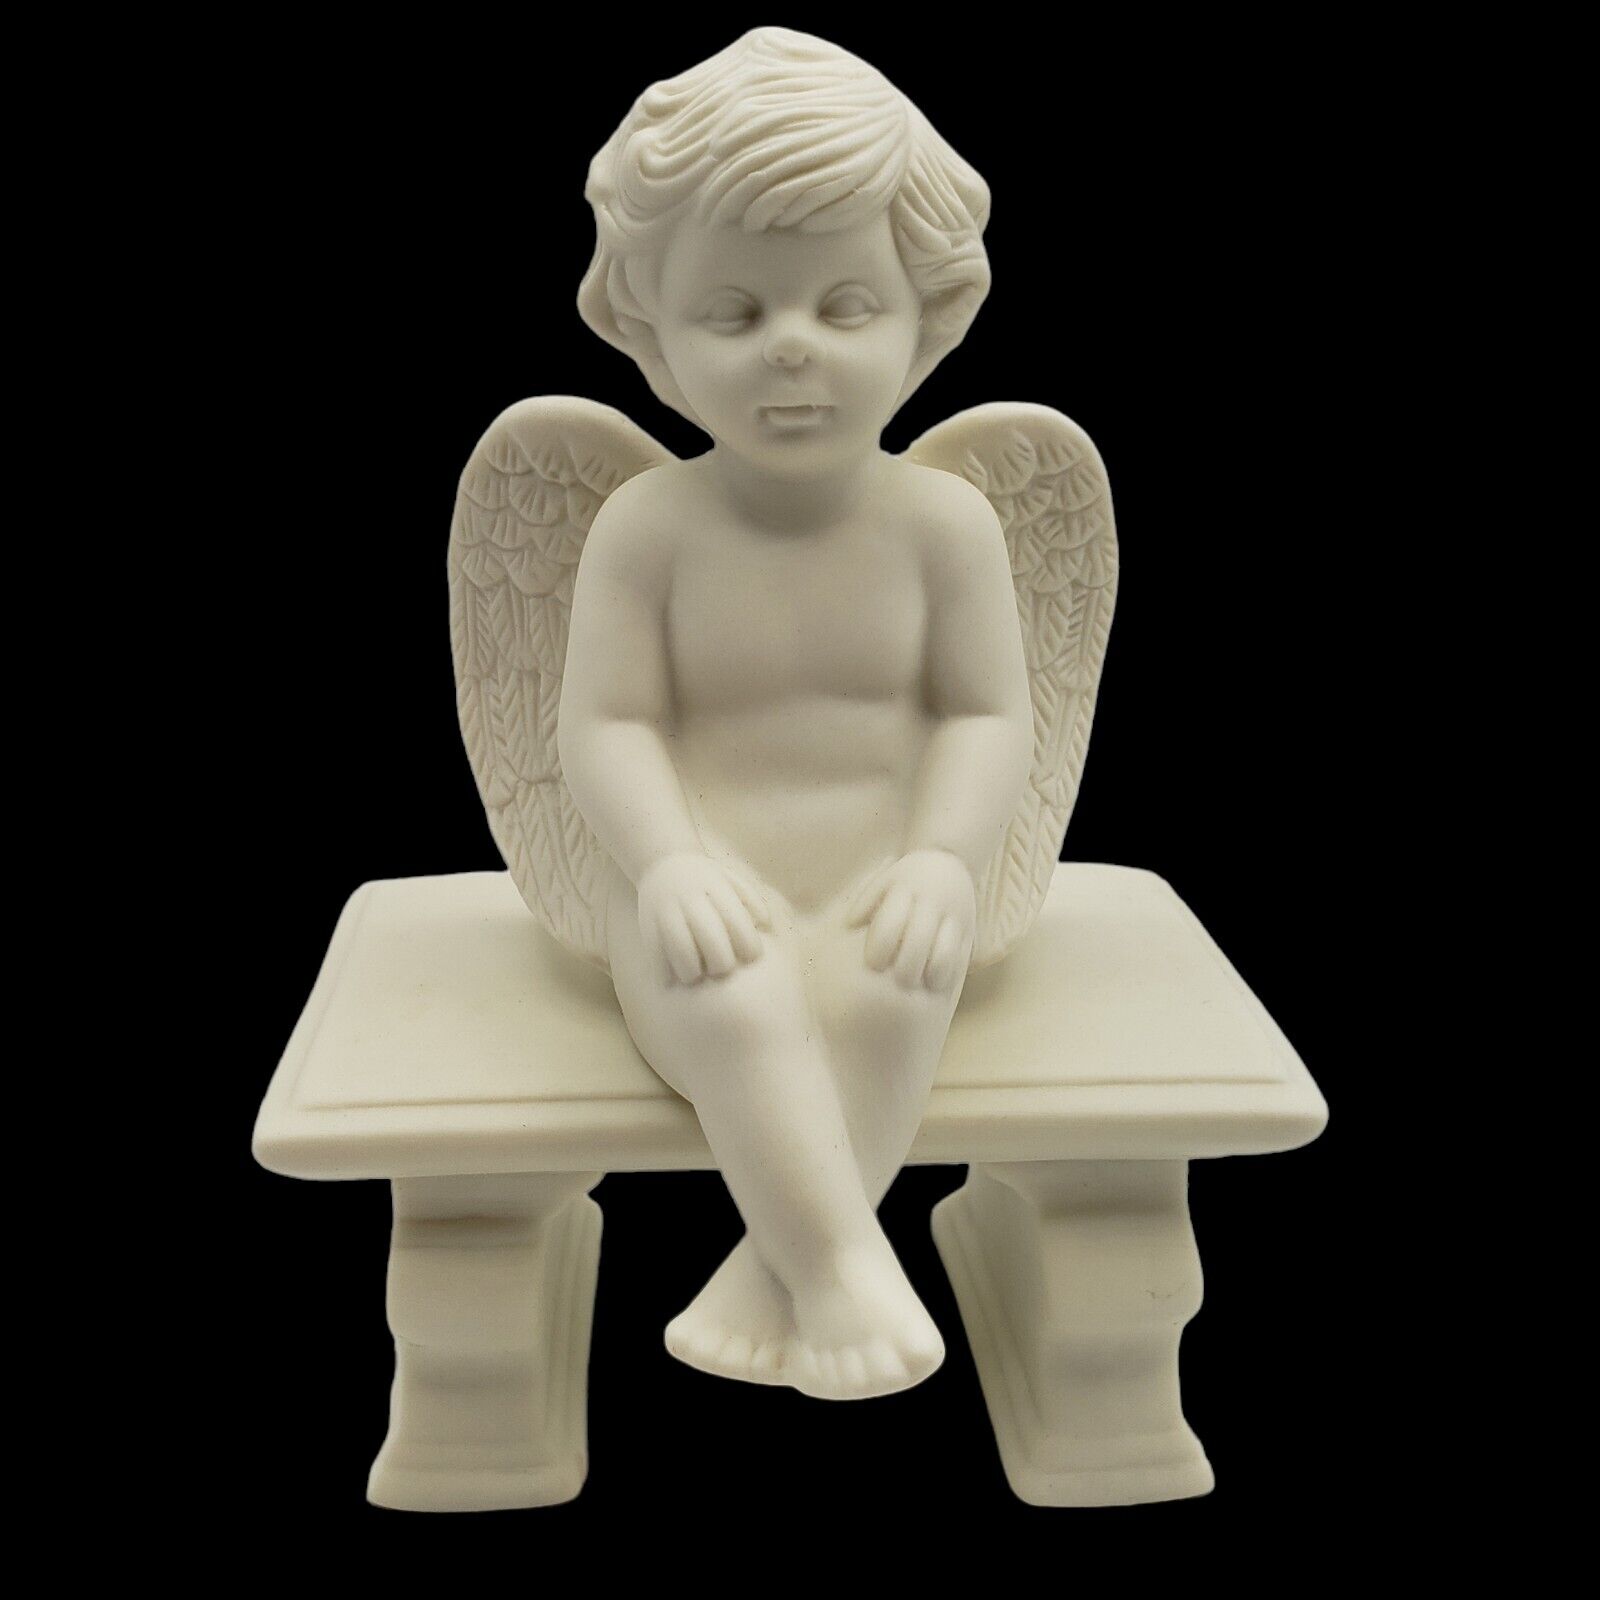 Vintage Cherub Sitting on Bench 2-piece Porcelain Figurine Home & Garden Party